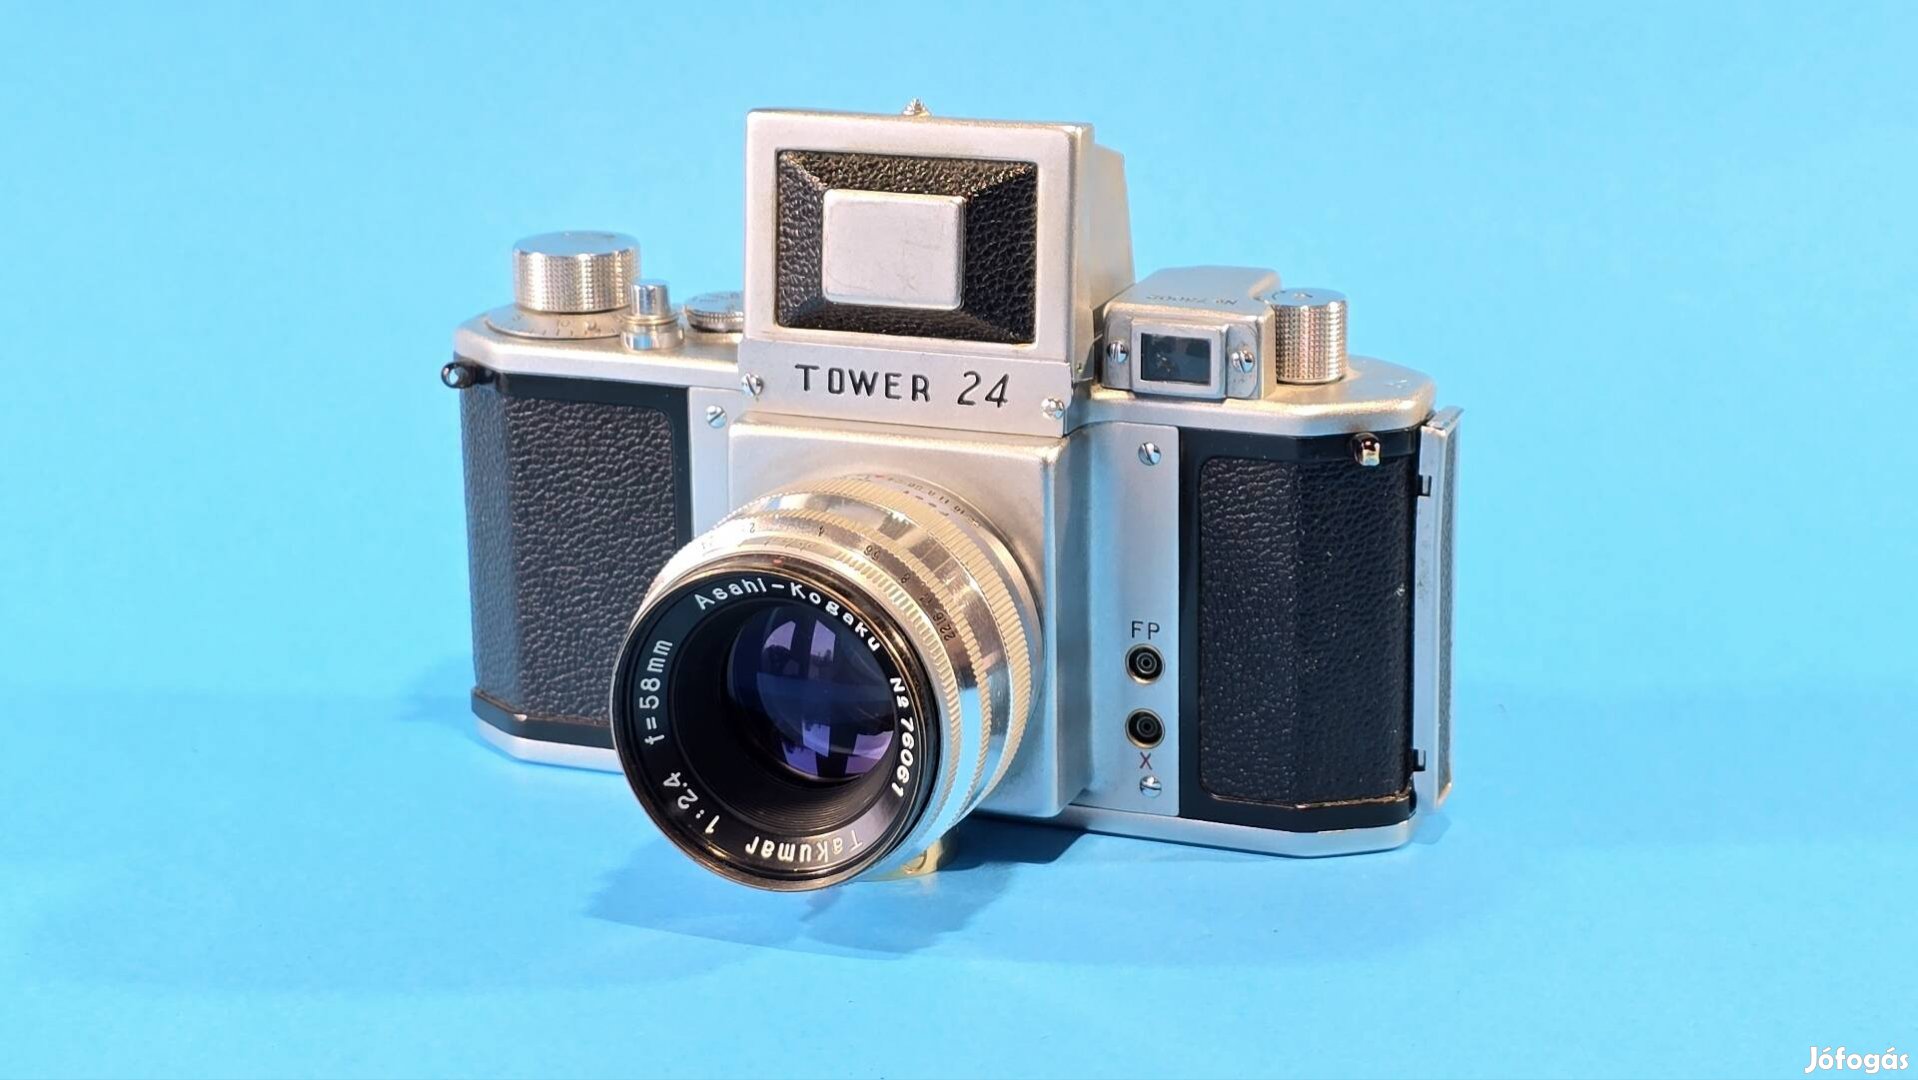 Tower 24 fényképezőgép asahi takumar 58mm 2.4